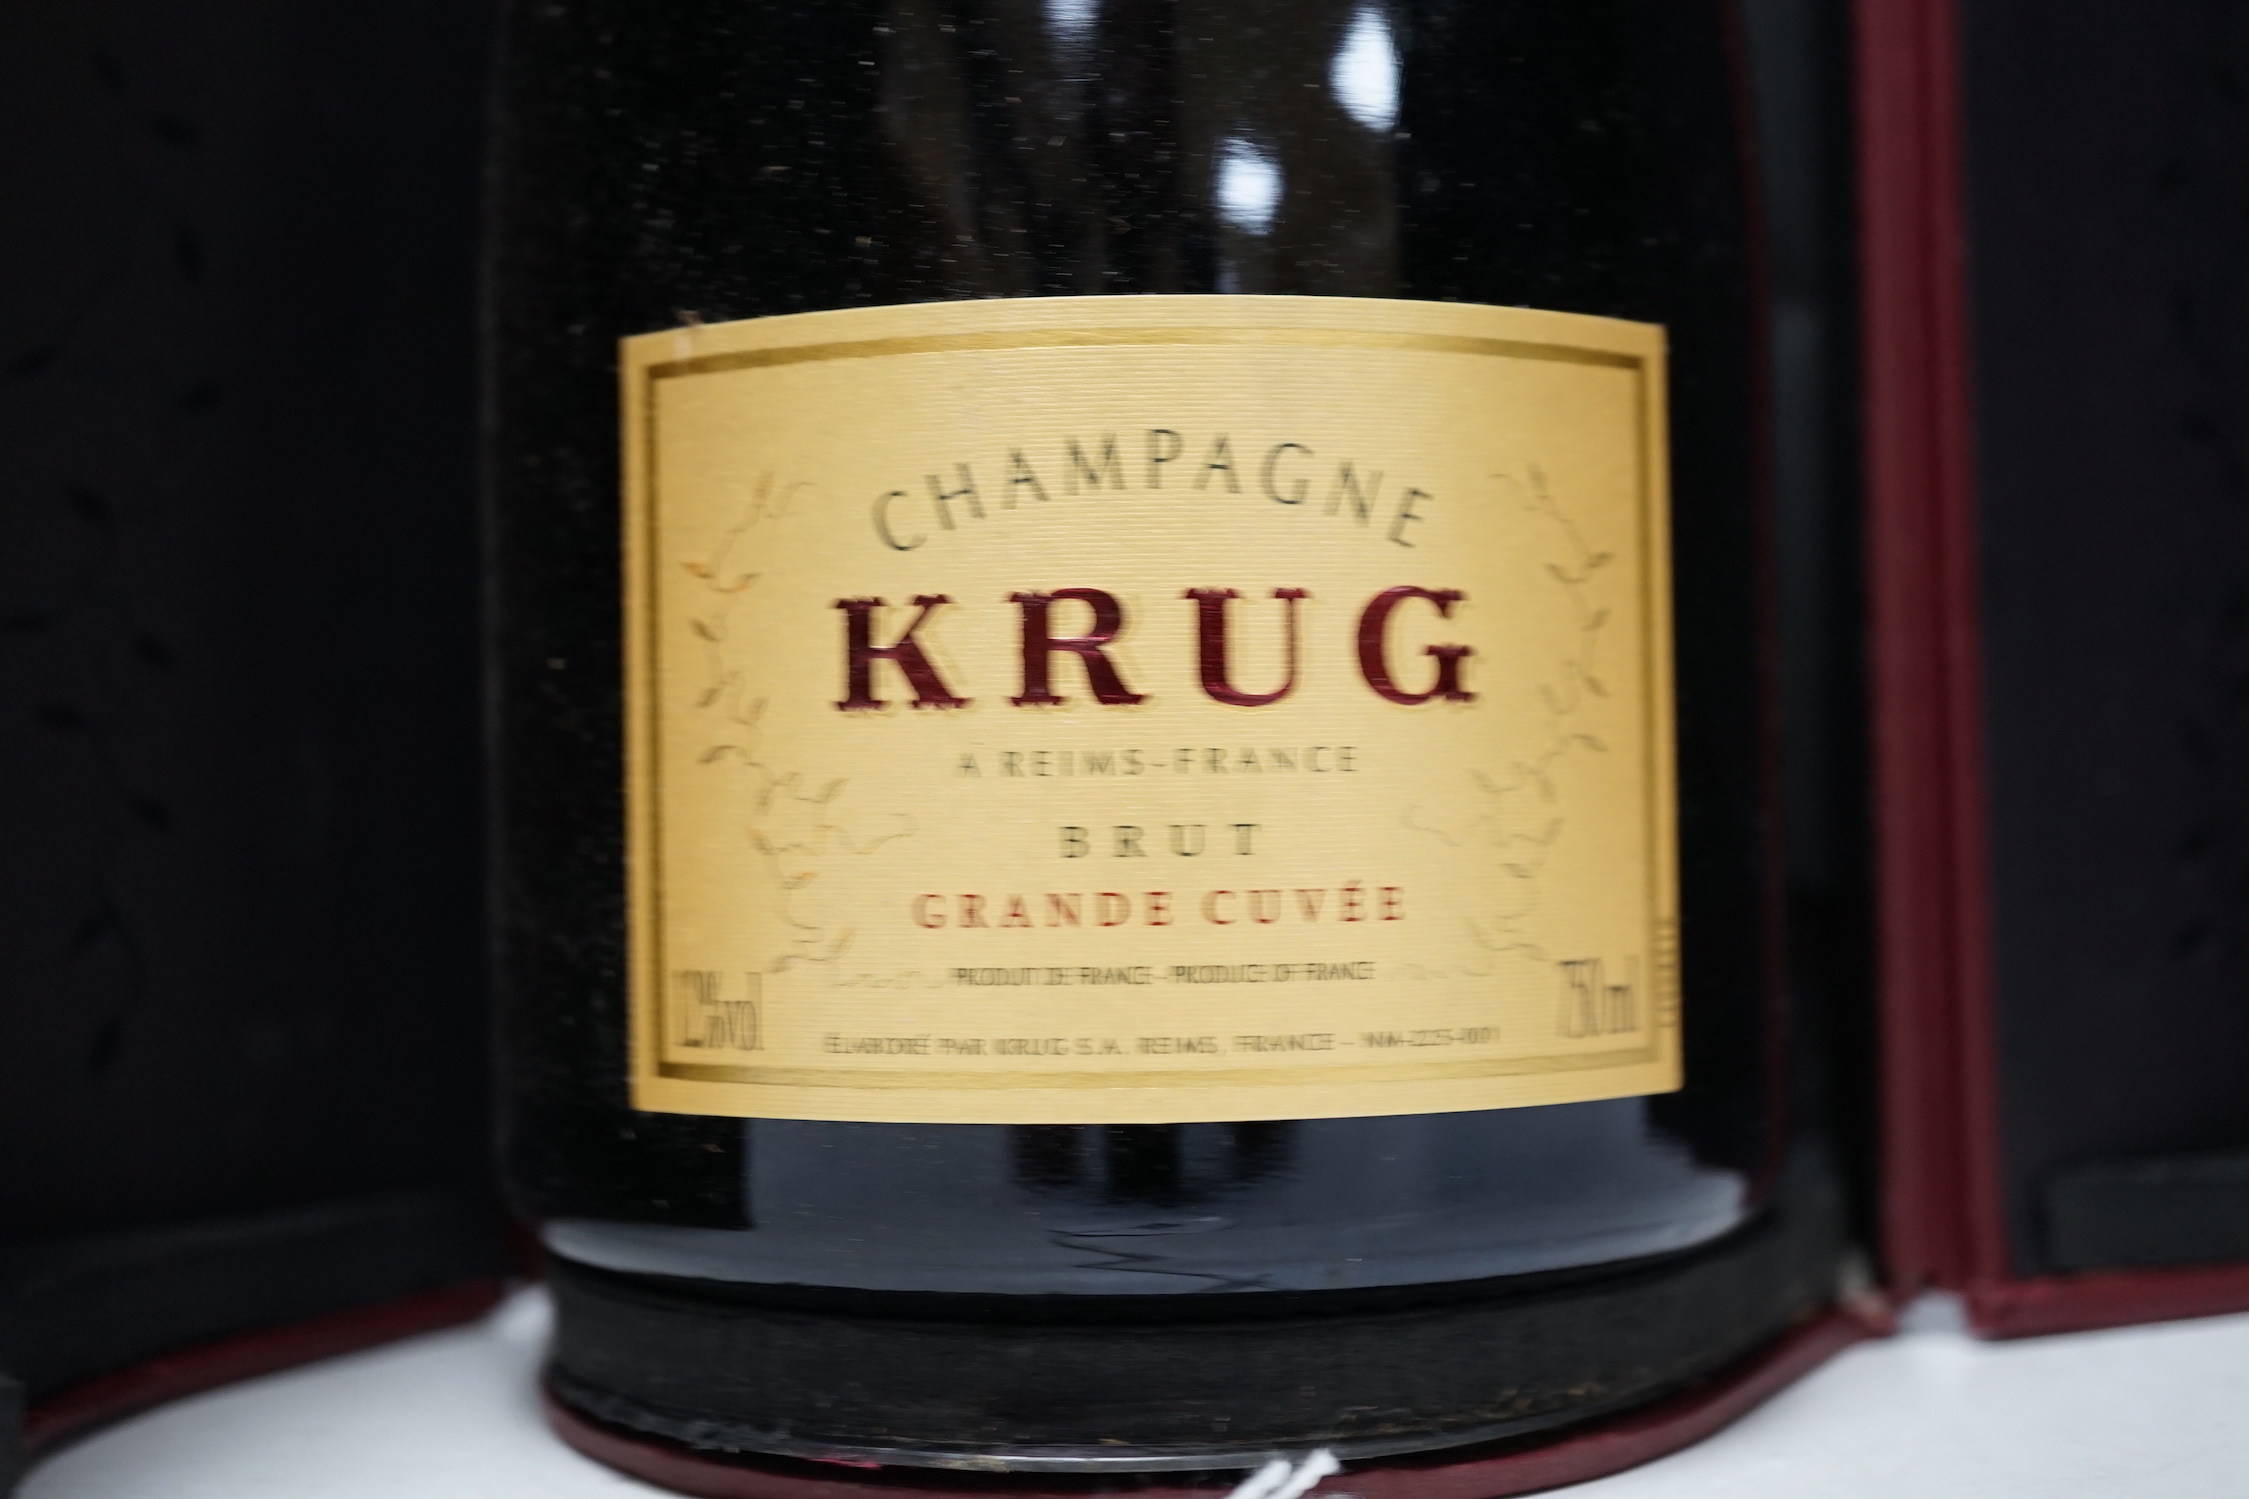 A bottle of Krug Grande Cuvee champagne